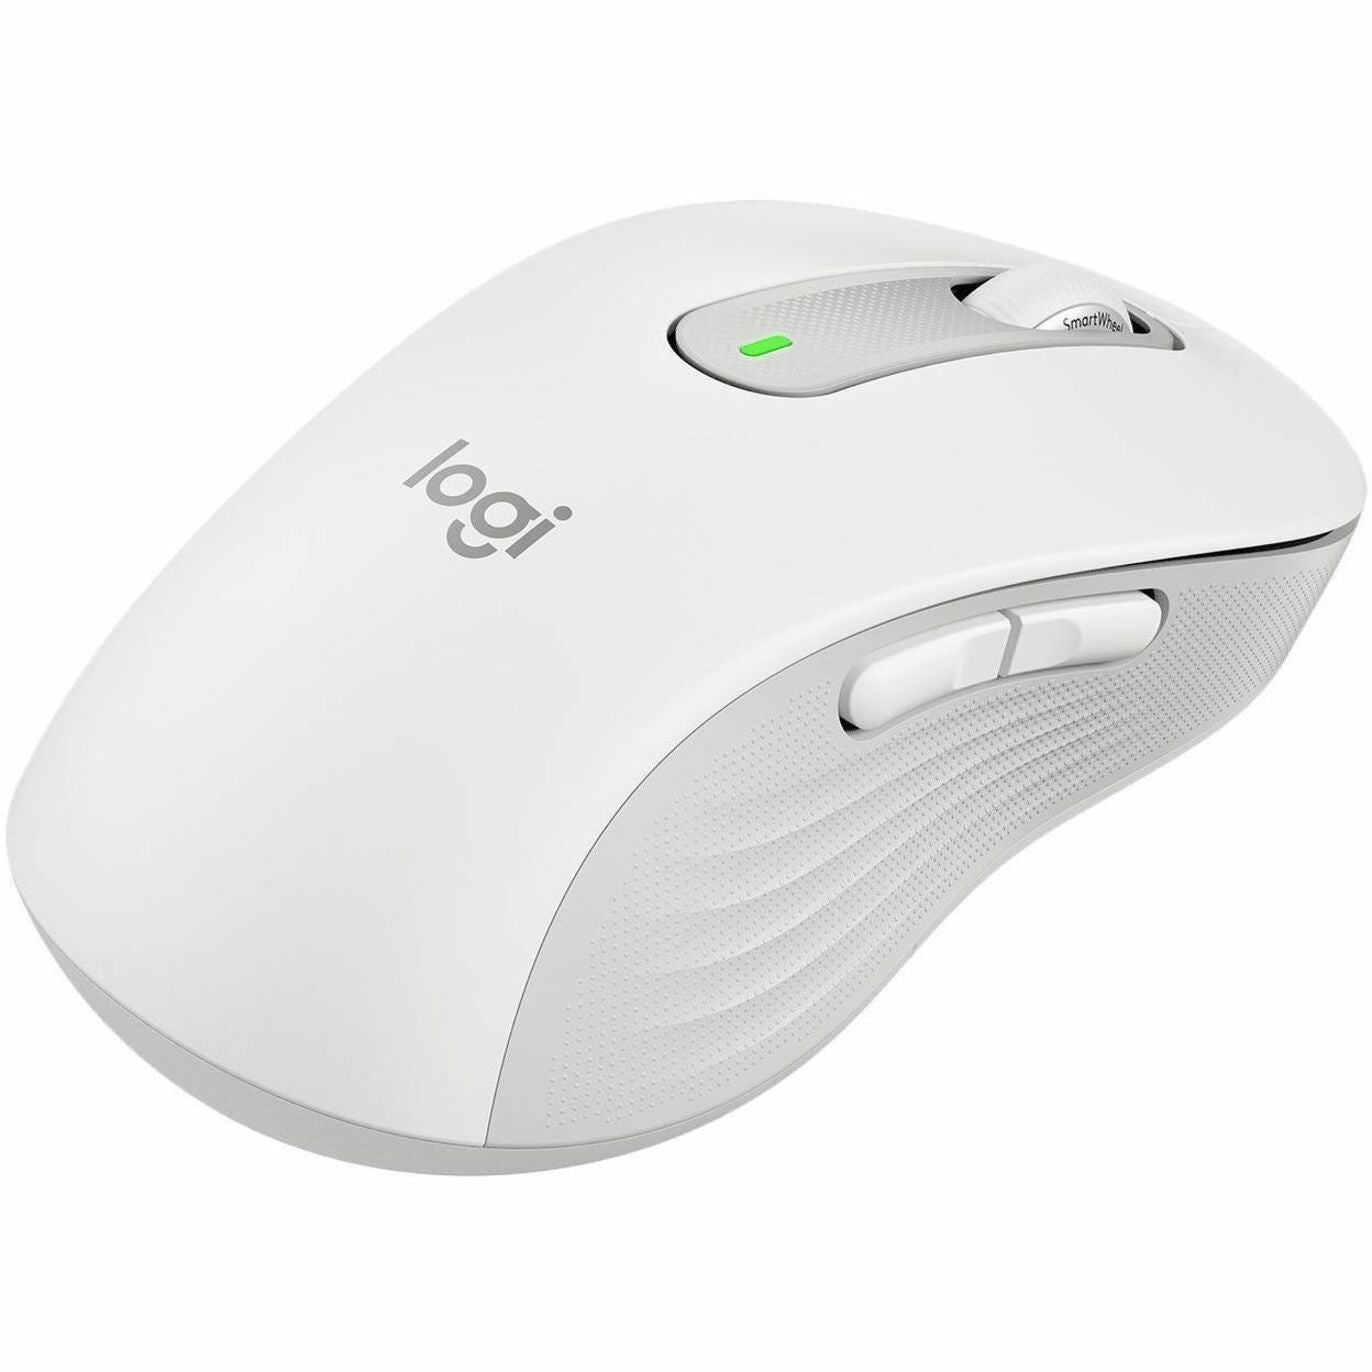 Logitech Signature M650 Mouse (910-006235)